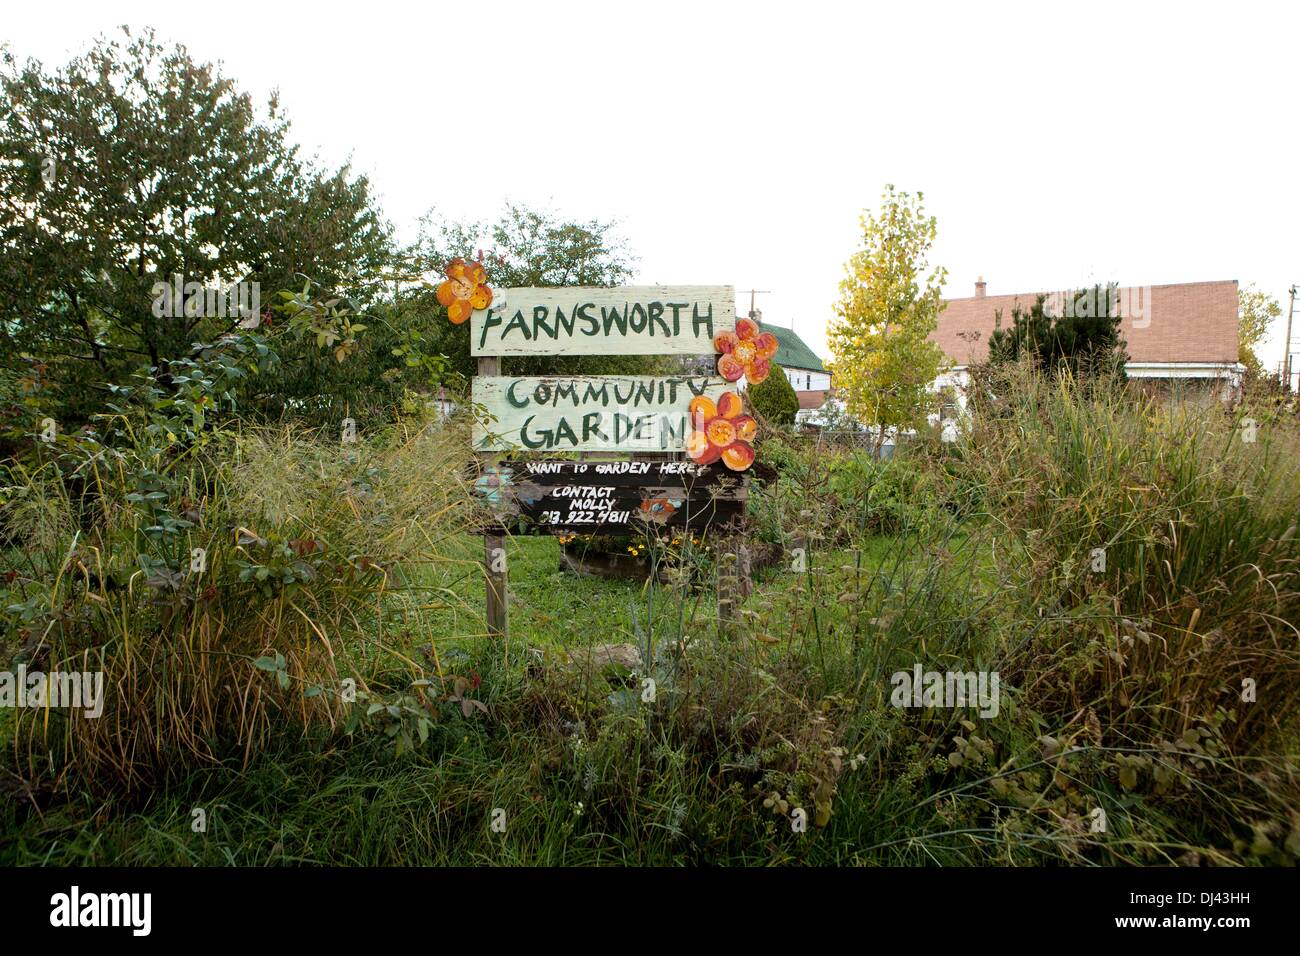 Die Farnsworth Gemeinschaftsgarten: eine langjährige urbane Landwirtschaft Anstrengung in Detroit. Bild wurde im Oktober 2013 aufgenommen. Stockfoto